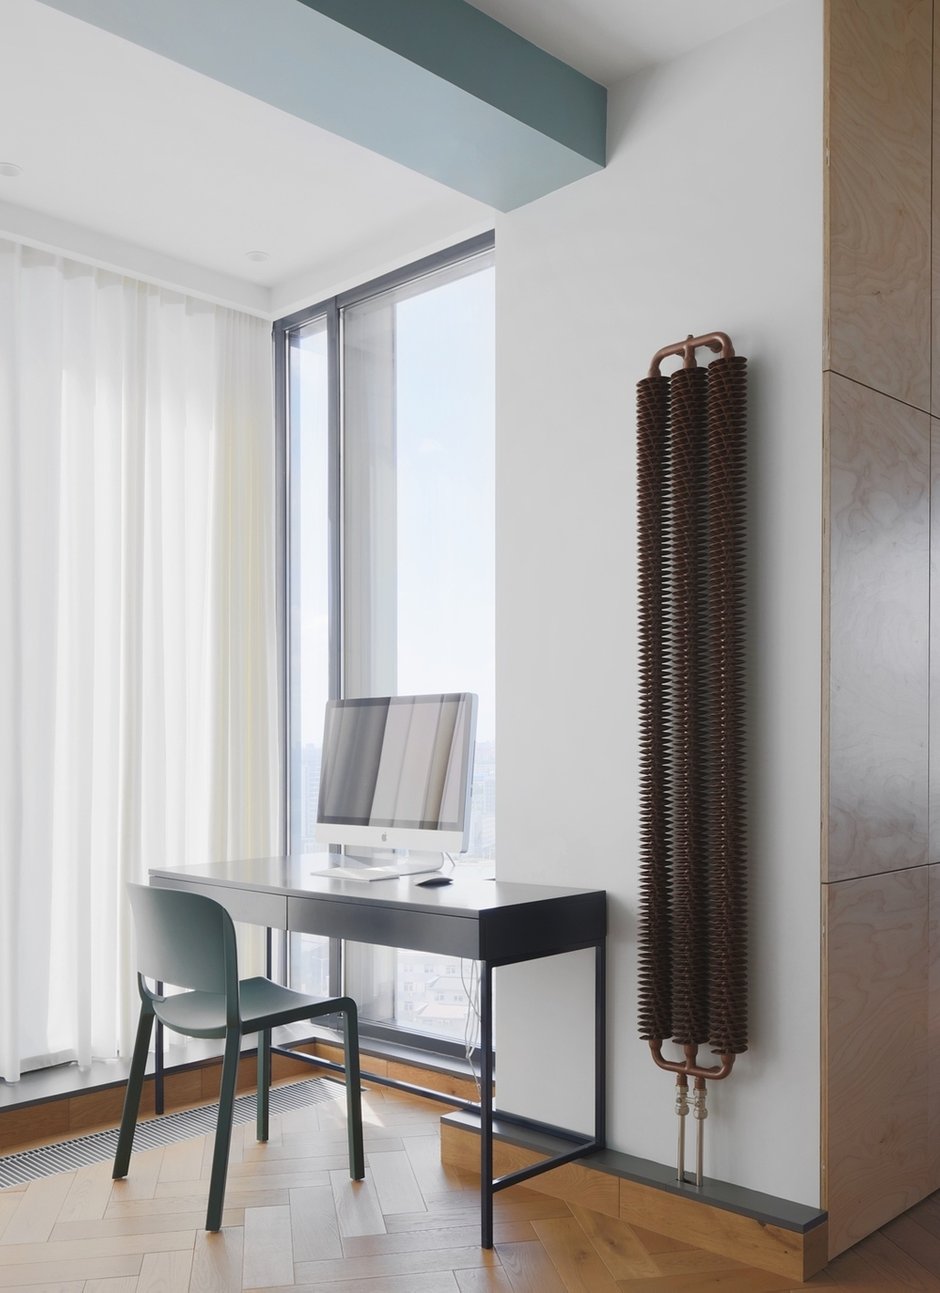 В спальне очень интересной деталью выступает радиатор. Благодаря своей необычной форме он оживляет пространство и выступает своеобразным арт-объектом.